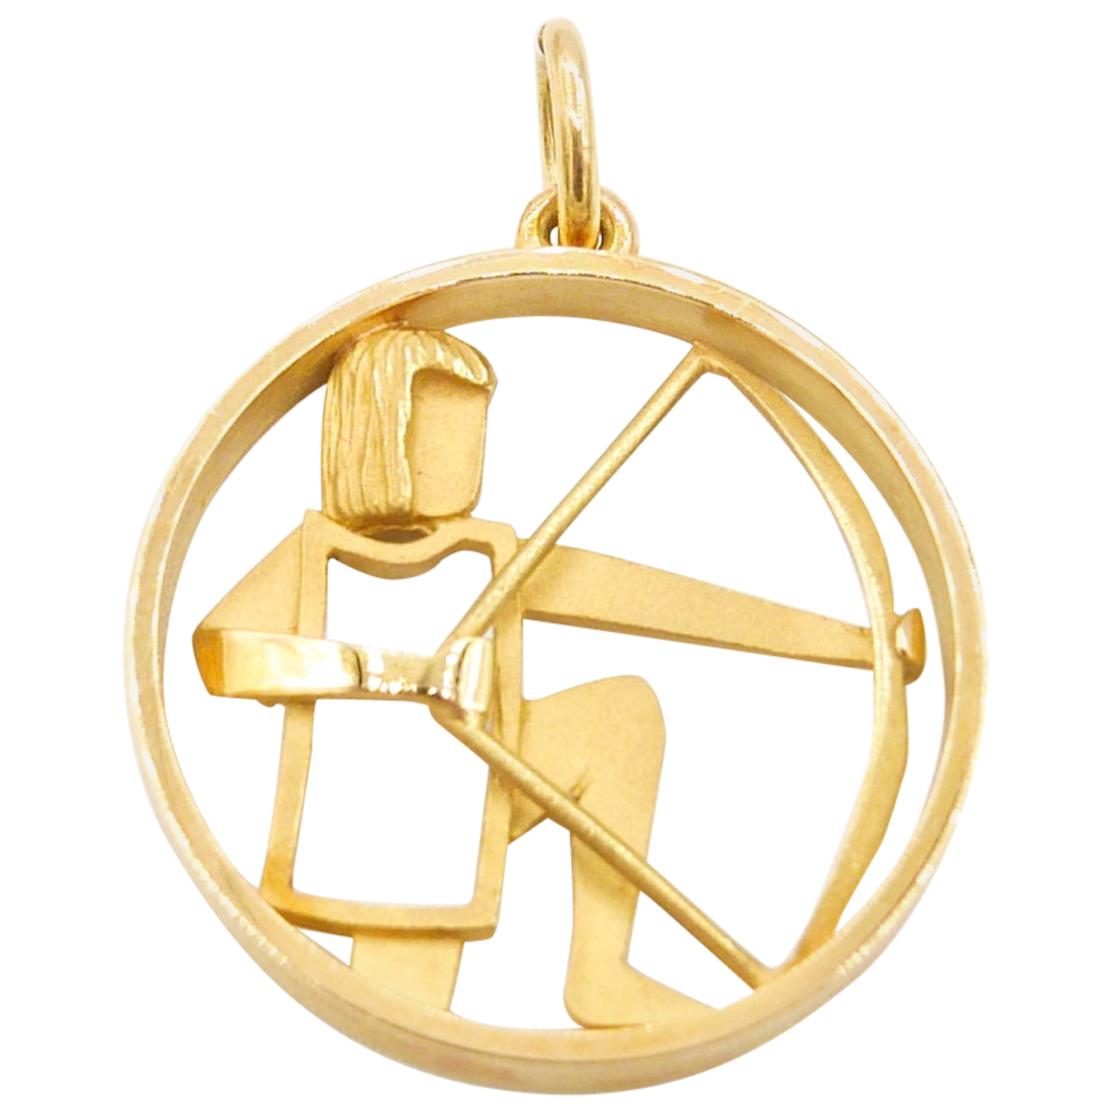 Güeblin 18 Karat Gold Sagittarius Zodiac Astrological Symbol Charm/Pendant